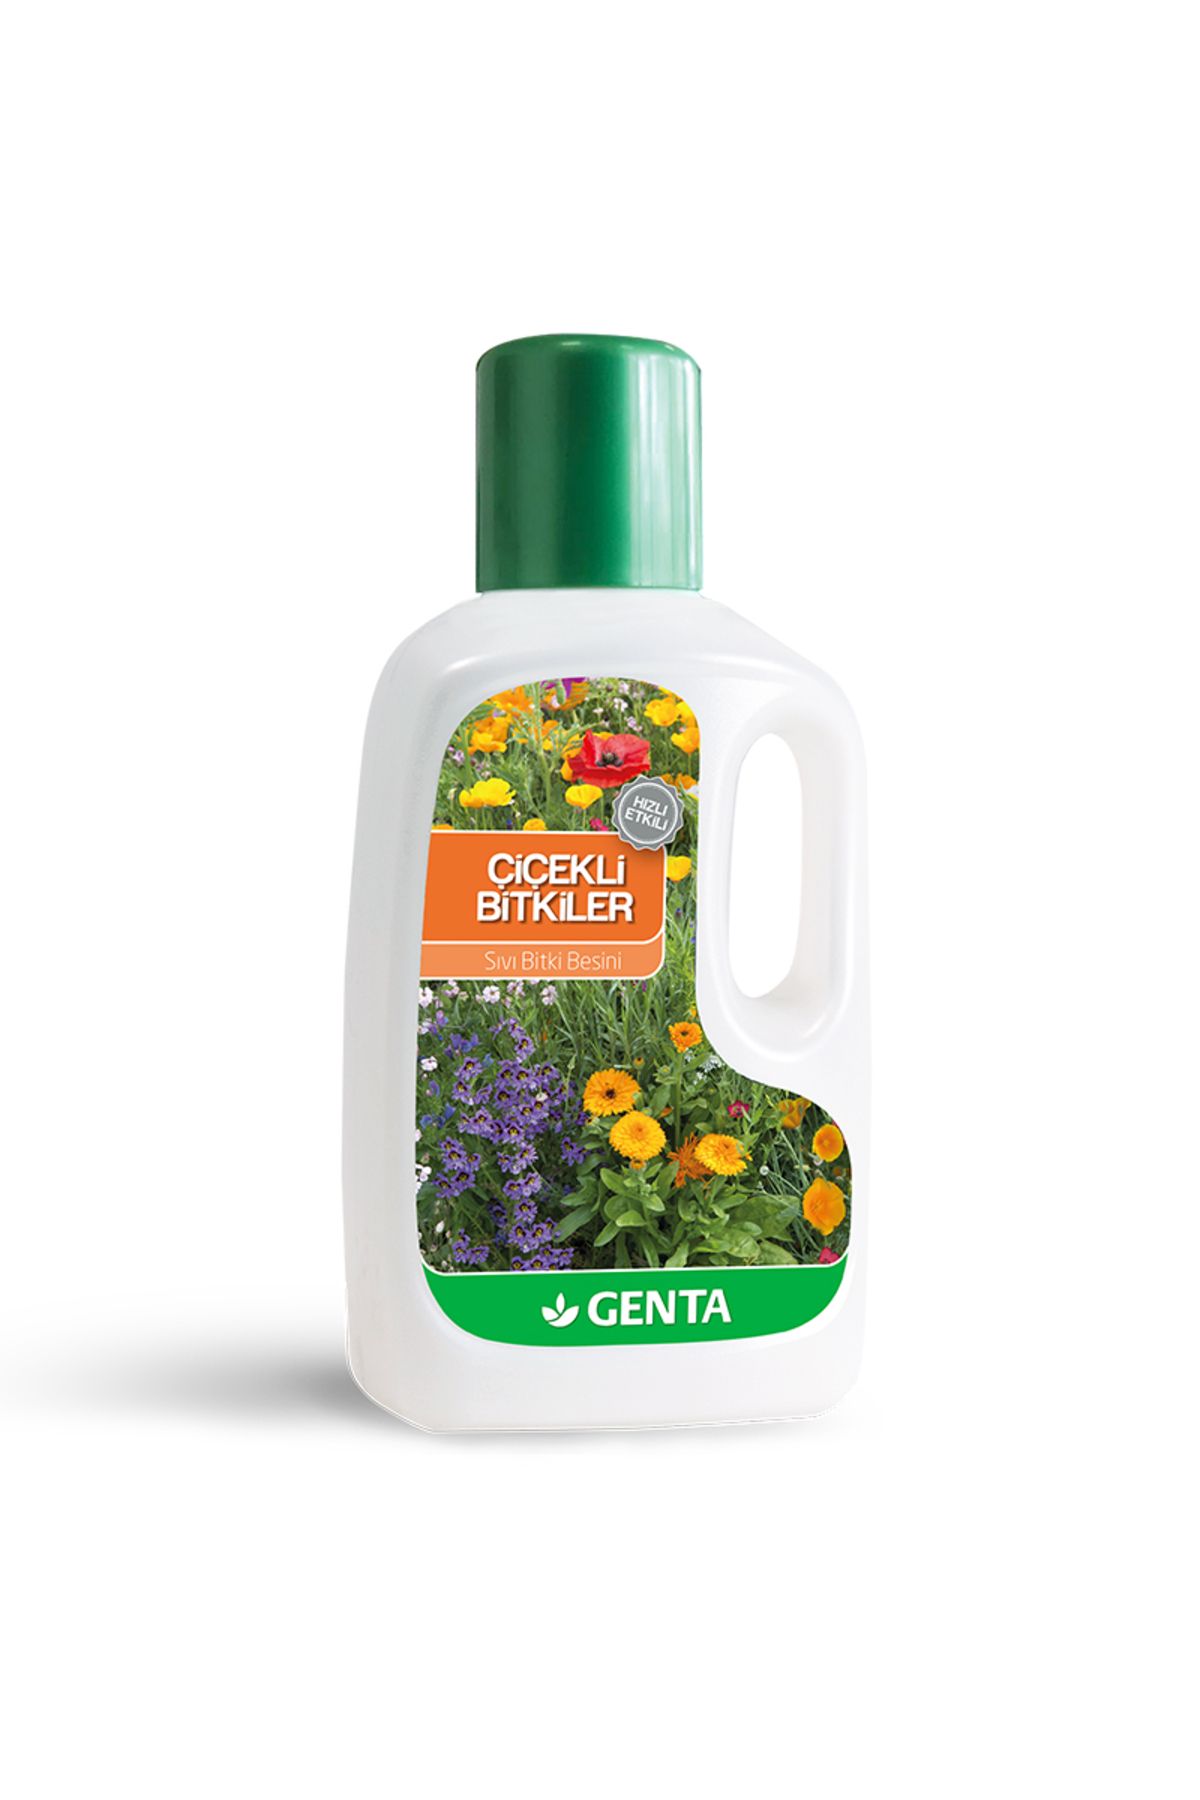 Genta Çiçekli Bitkiler Için Sıvı Bitki Besini 500 Cc- Sıvı Gübre